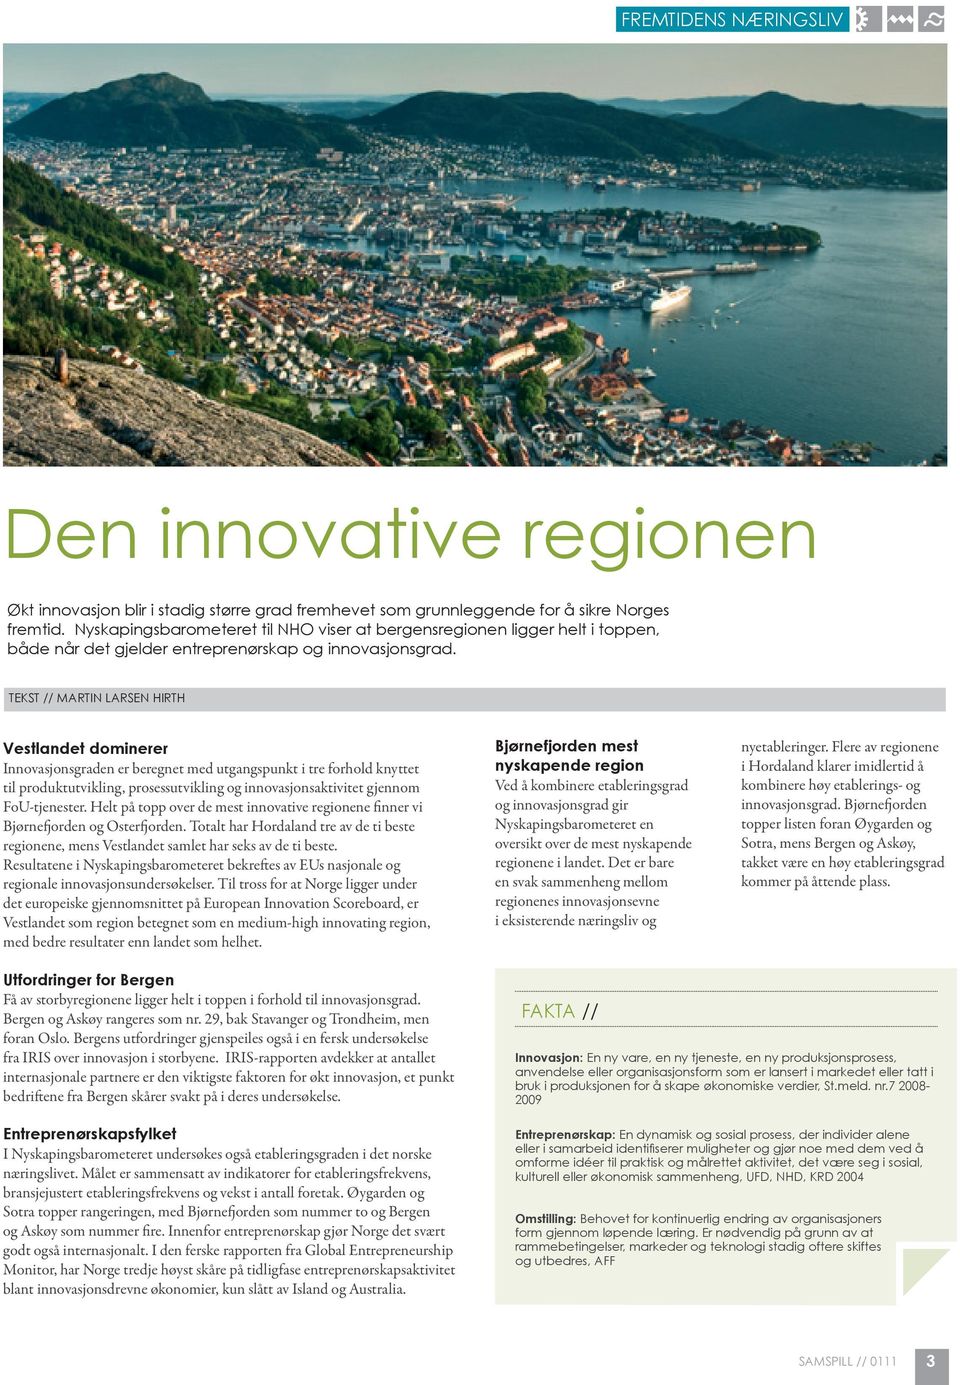 TEKST // Martin Larsen Hirth Vestlandet dominerer Innovasjonsgraden er beregnet med utgangspunkt i tre forhold knyttet til produktutvikling, prosessutvikling og innovasjonsaktivitet gjennom